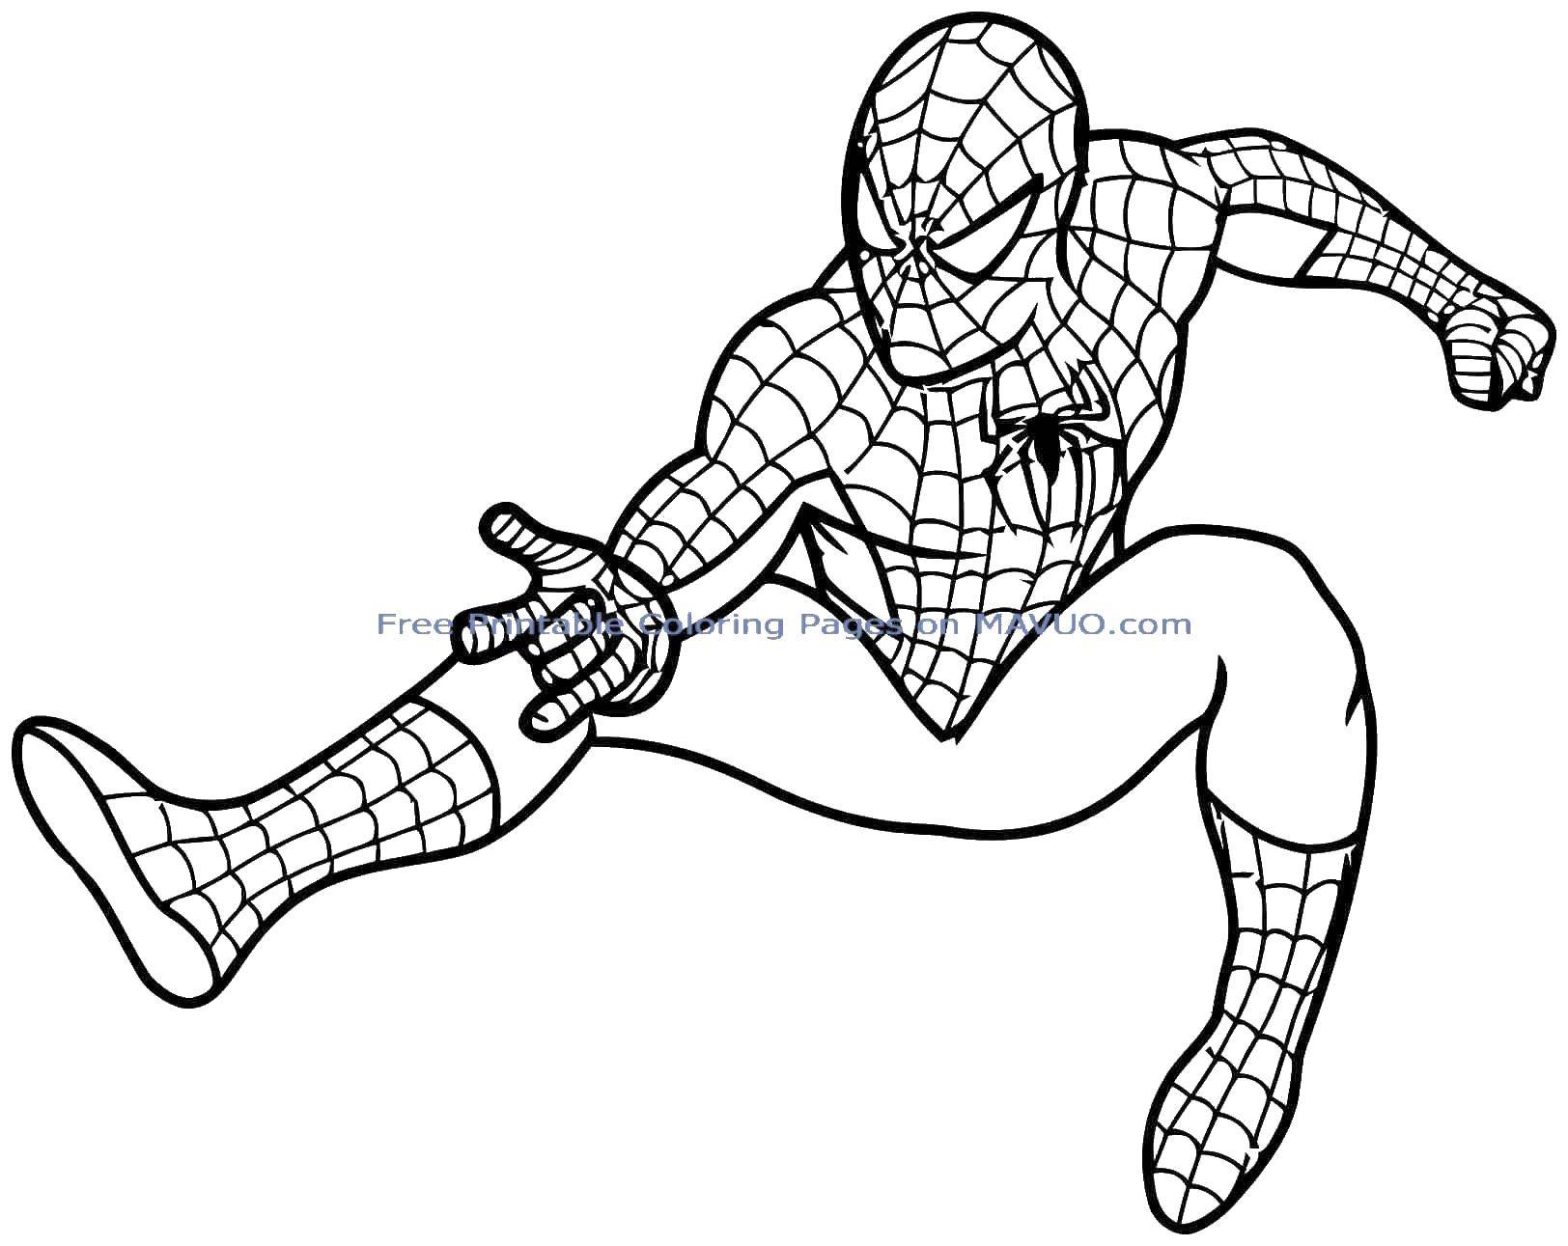 Раскраска персонажа из мультфильма Спайдермен, человек-паук для мальчиков (Спайдермен, человек-паук)